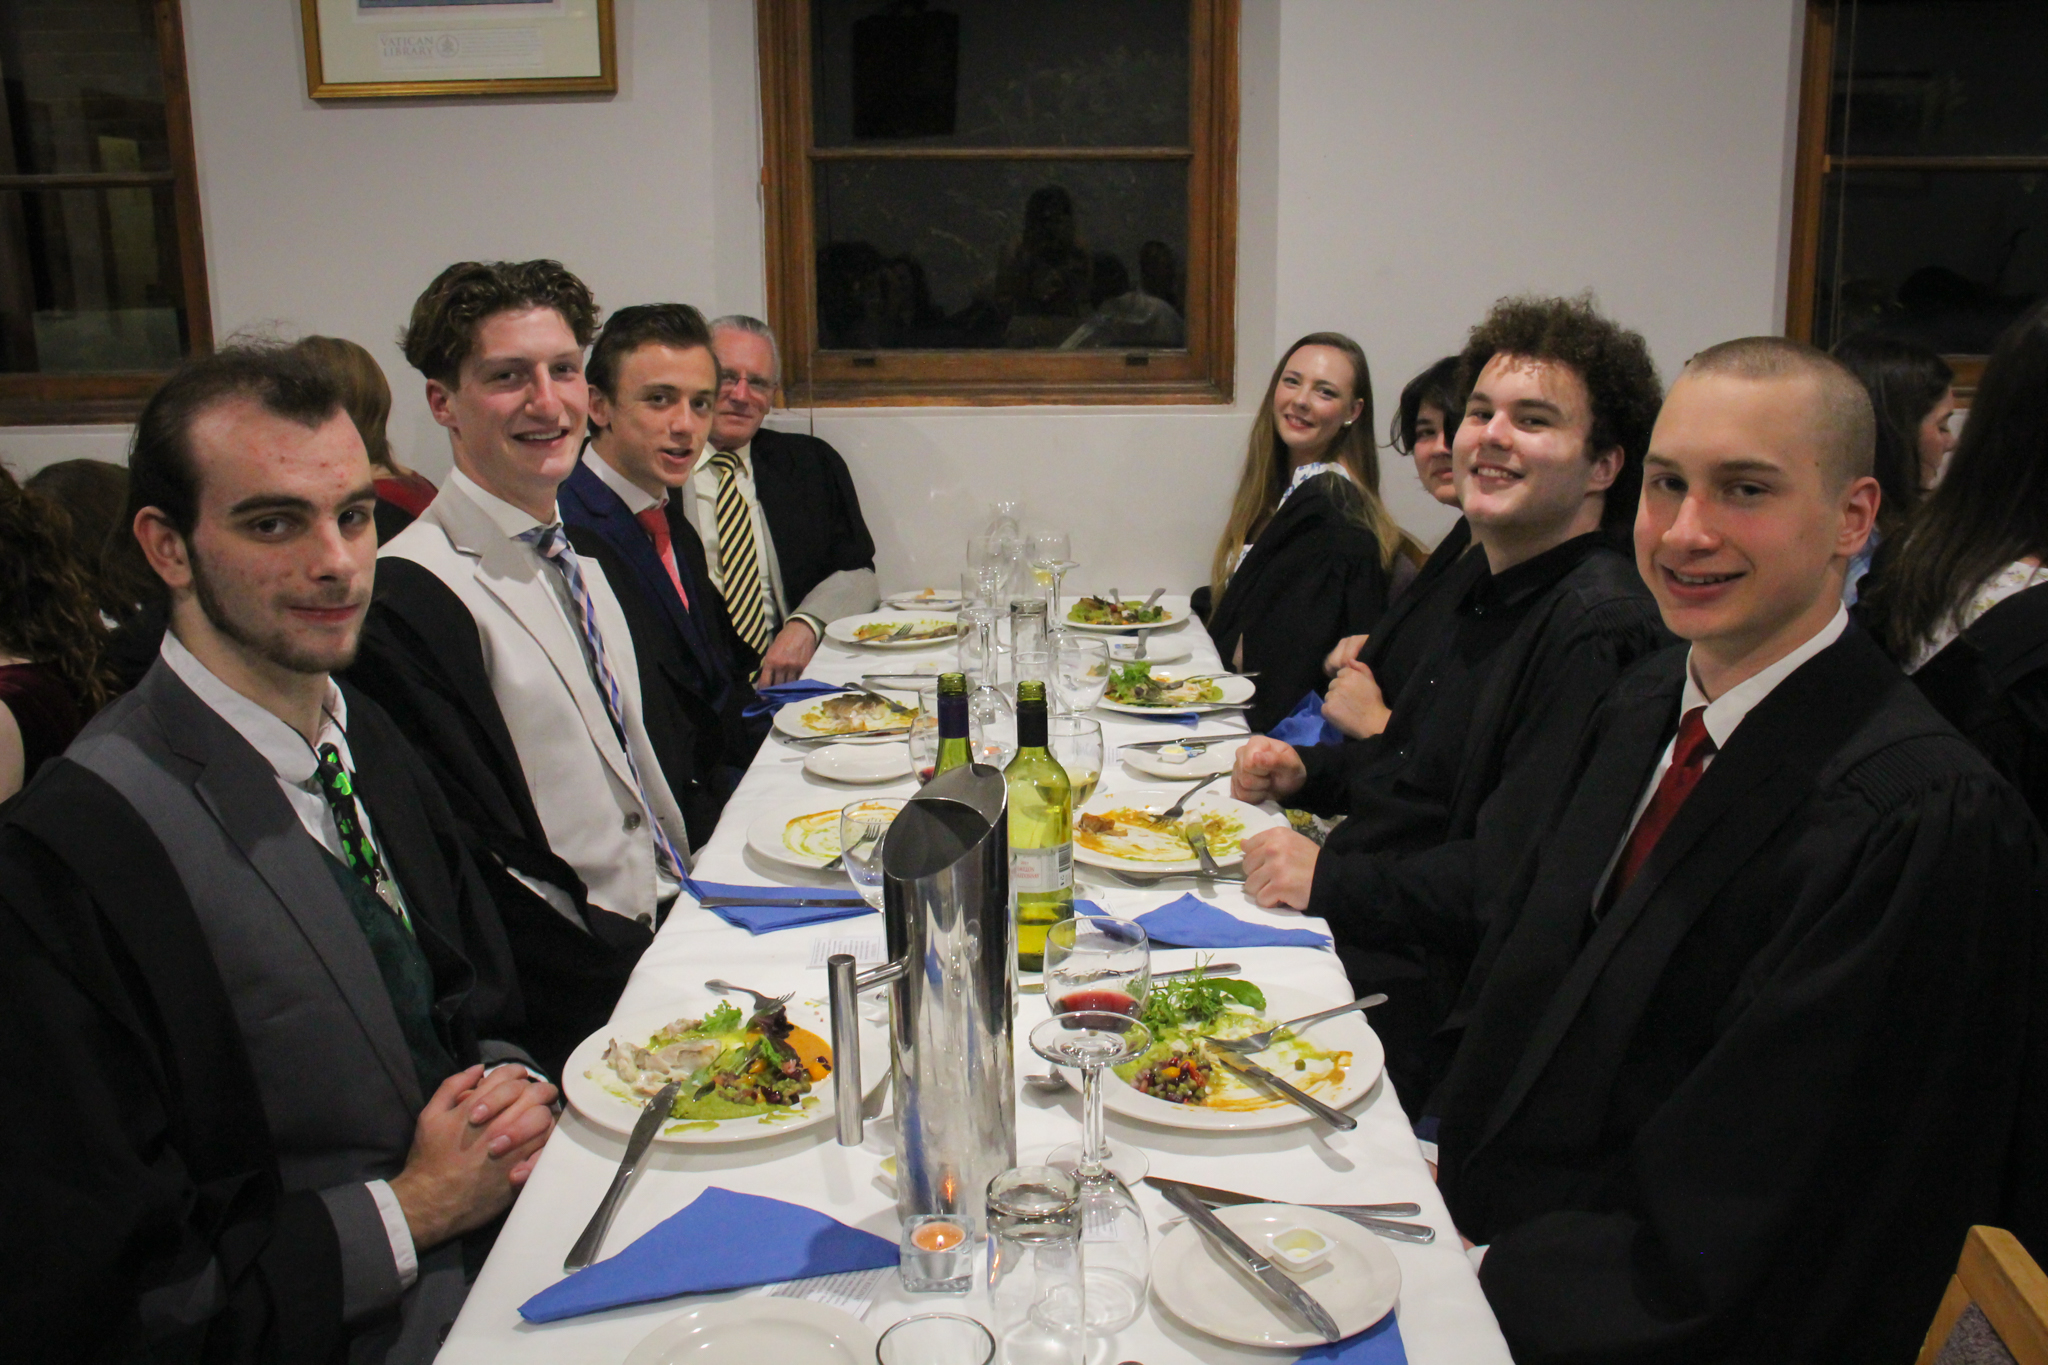 St-Edmund-Campion-Dinner-2022-16. Campion College Australia.